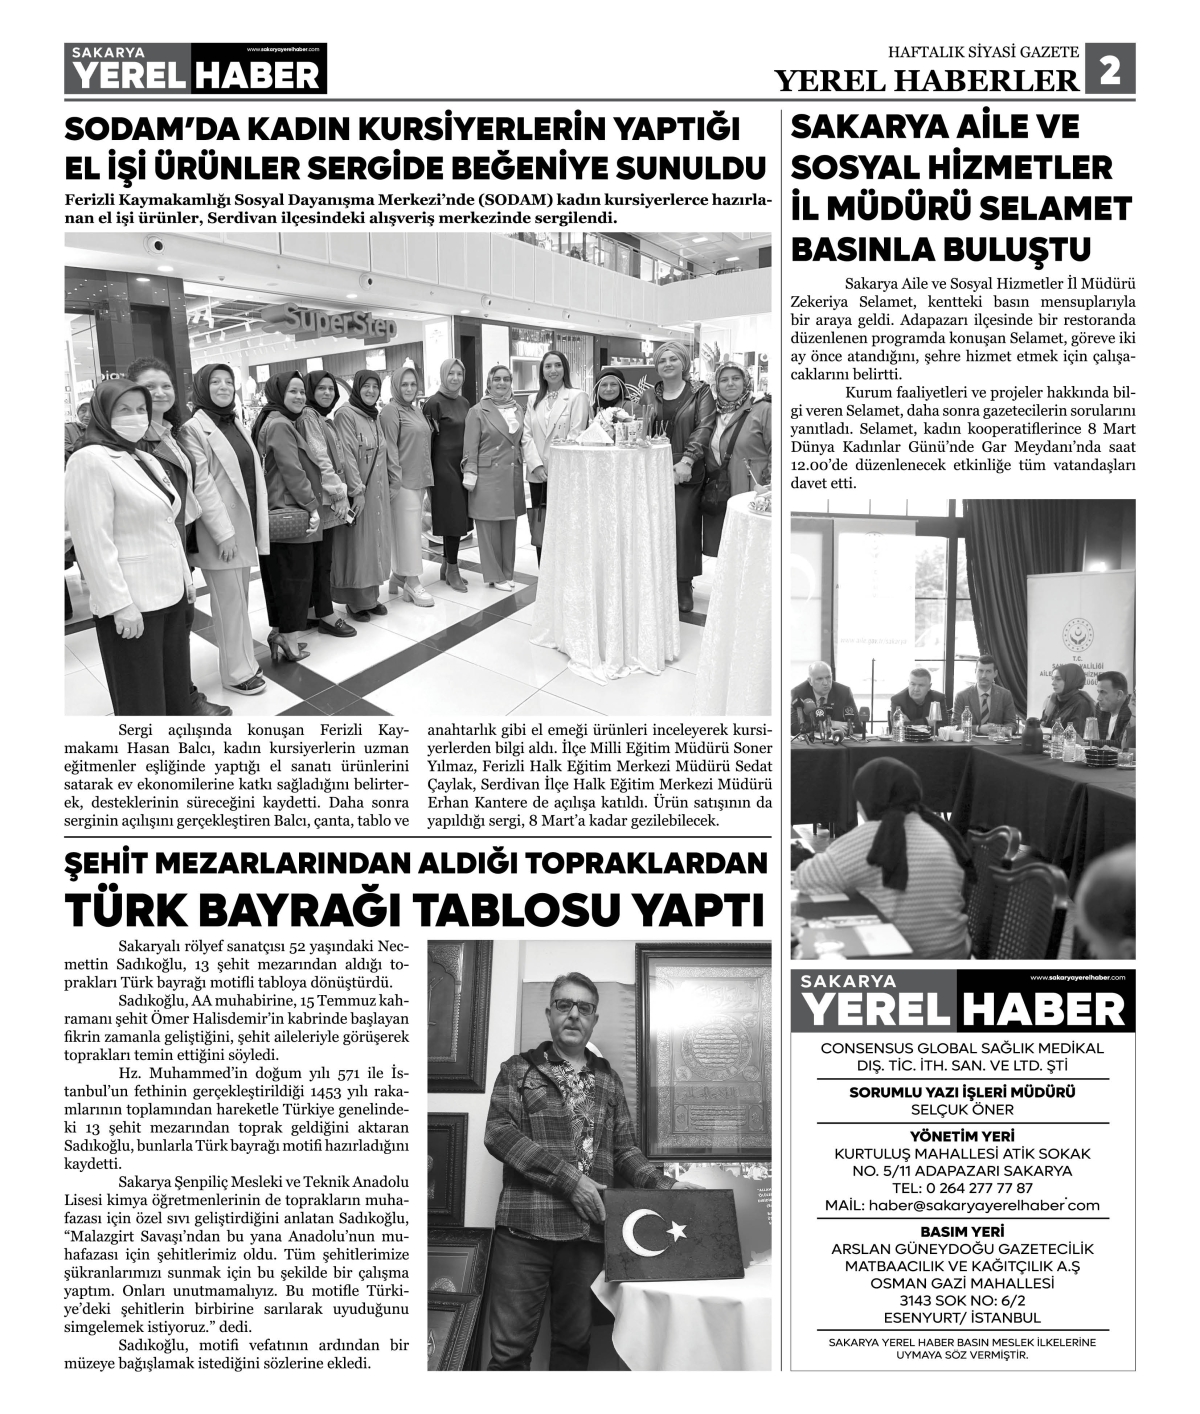 Sakarya Yerel Haber Gazetesi 45. Sayısı Çıktı